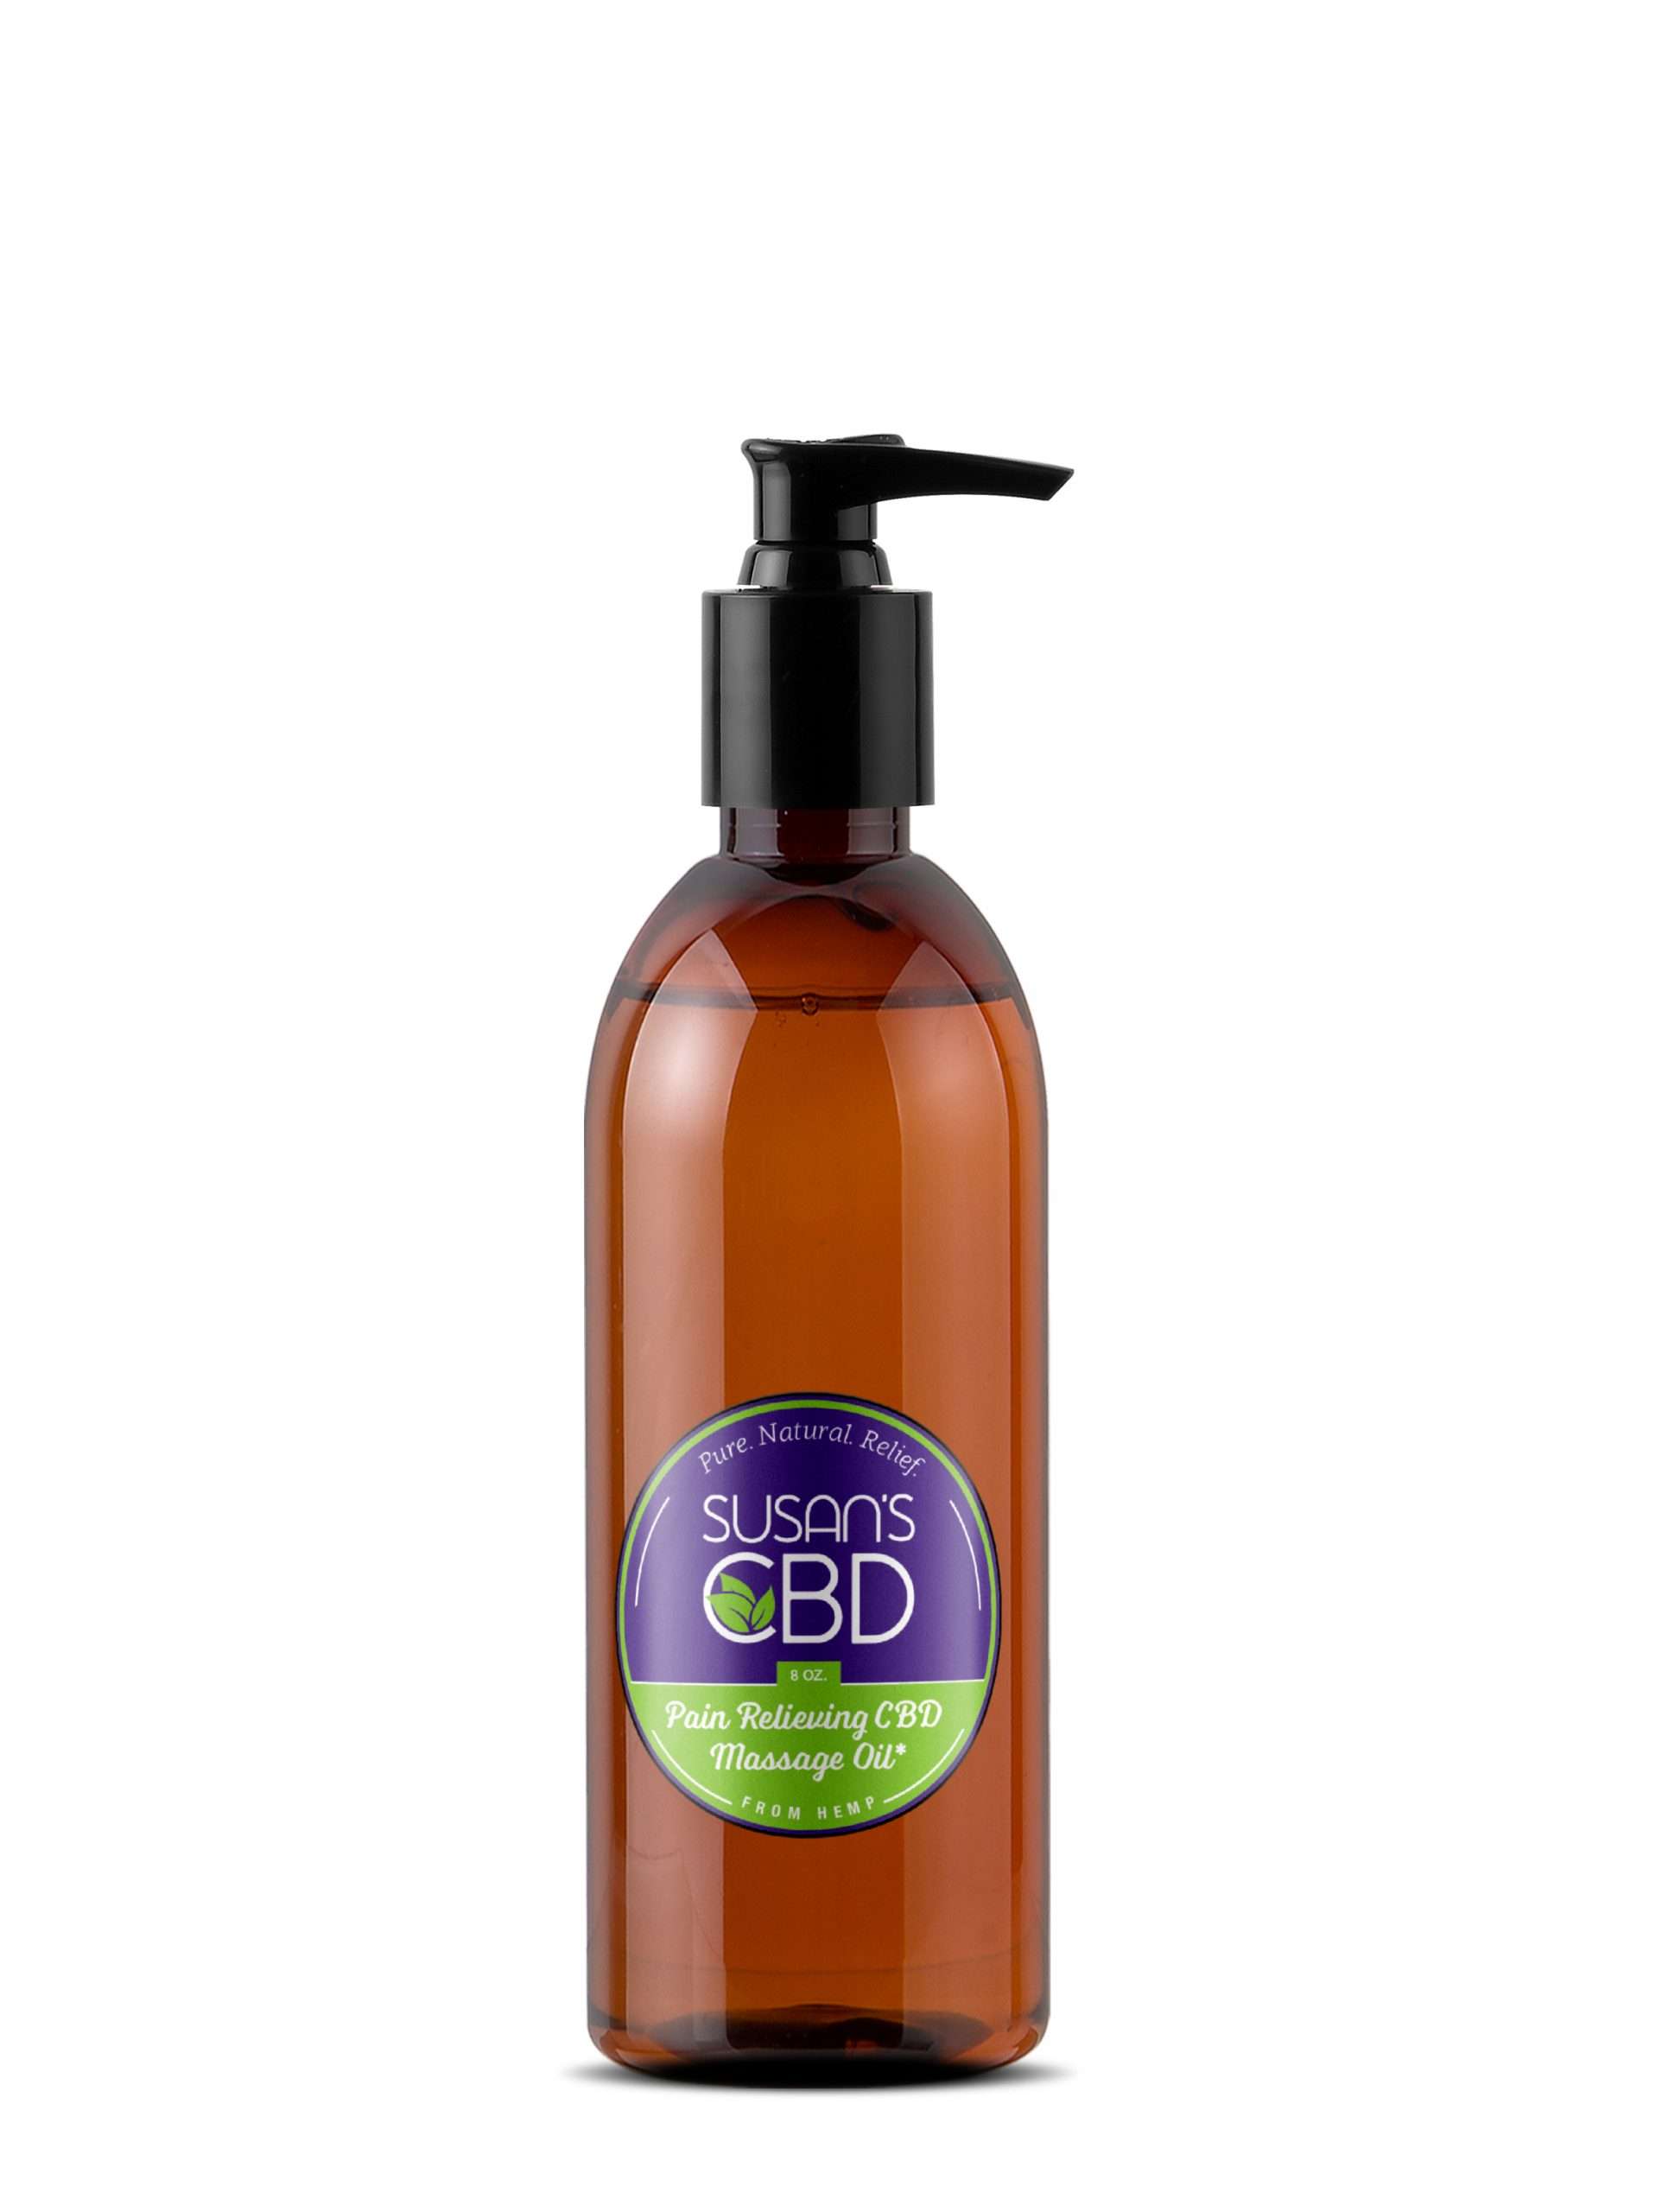 8 oz Hemp CBD Massage Oil  1,200 mg of pure CBD